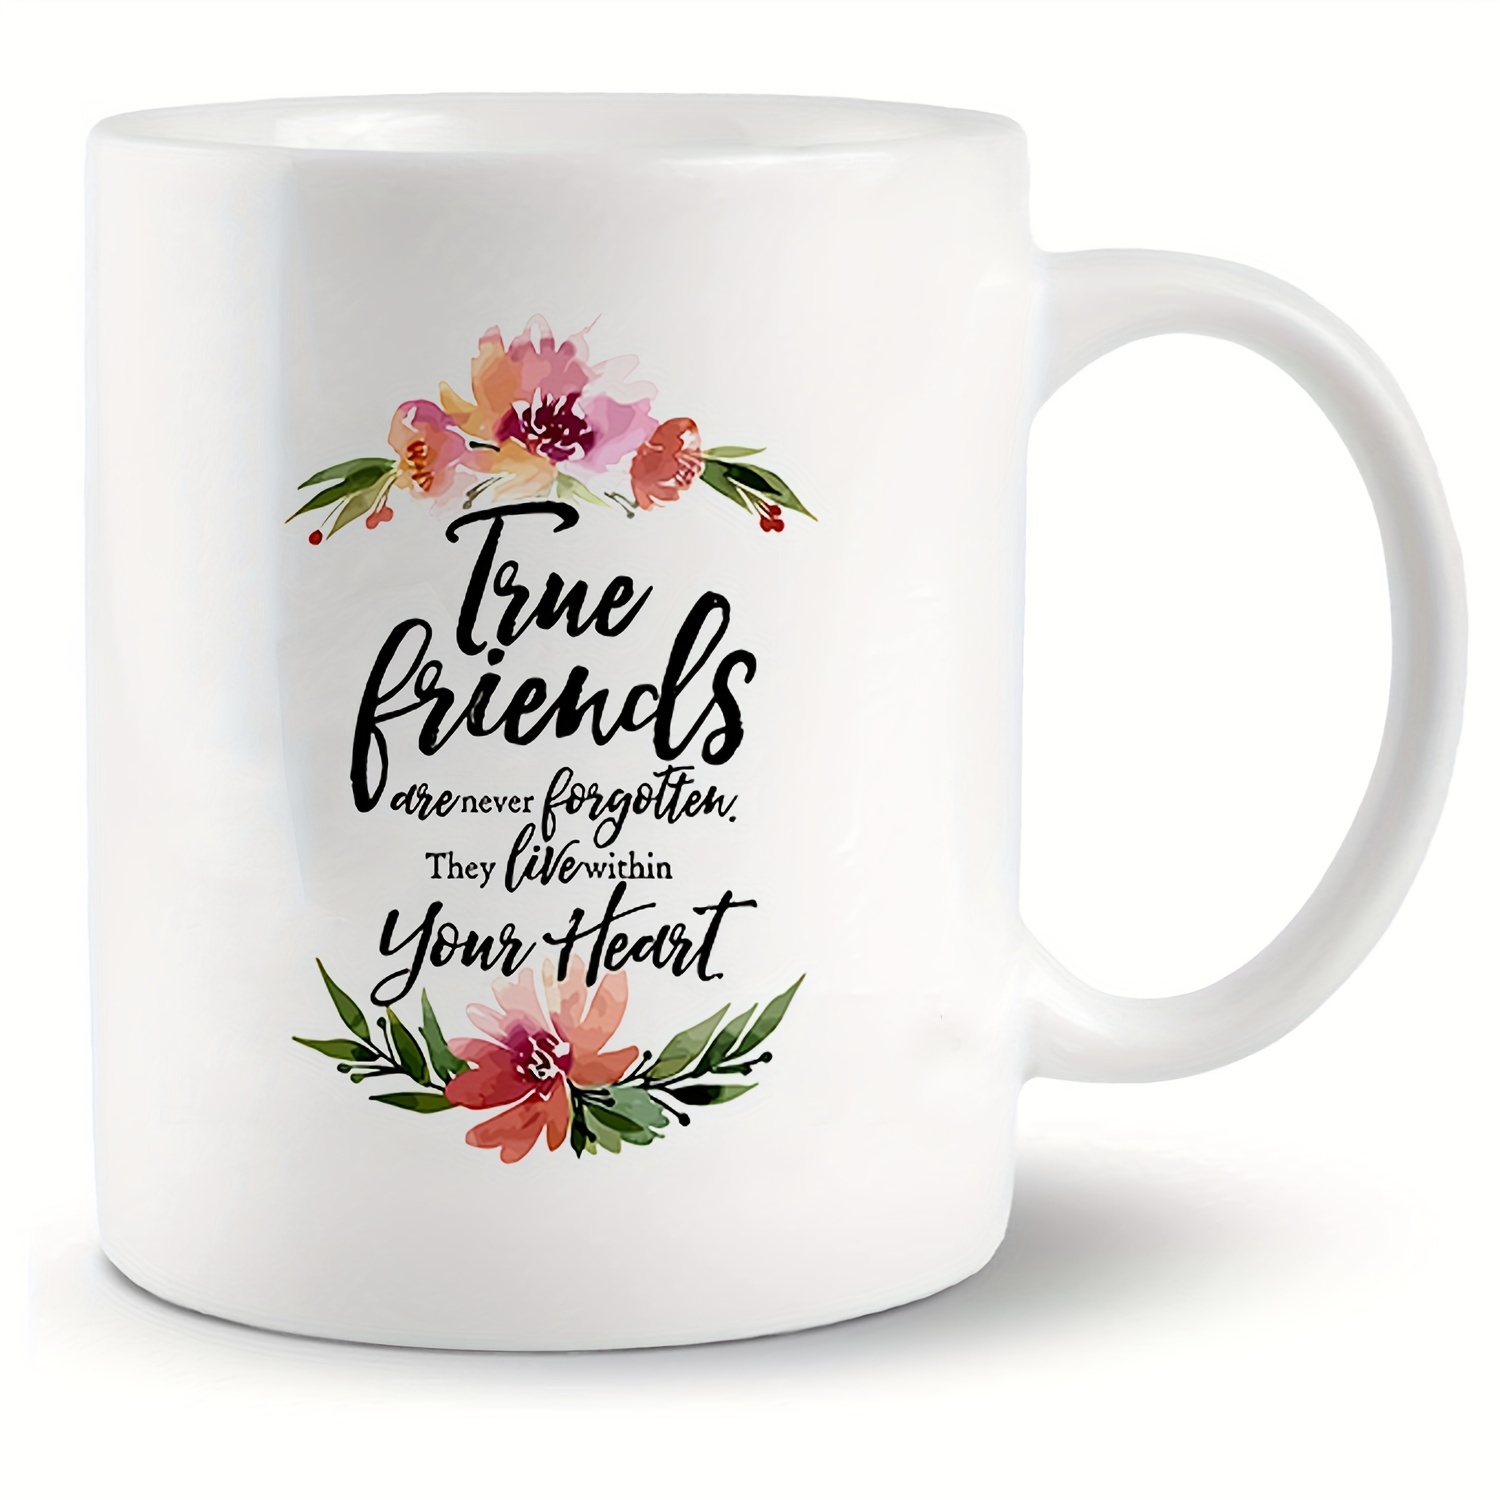 Arandu Comercial SRL - Tazas #GRANDES Para los que gustan de tomar MUCHO!  ☕️ Buena opción para regalar a tu amigo/a qué le gusta el café o te!